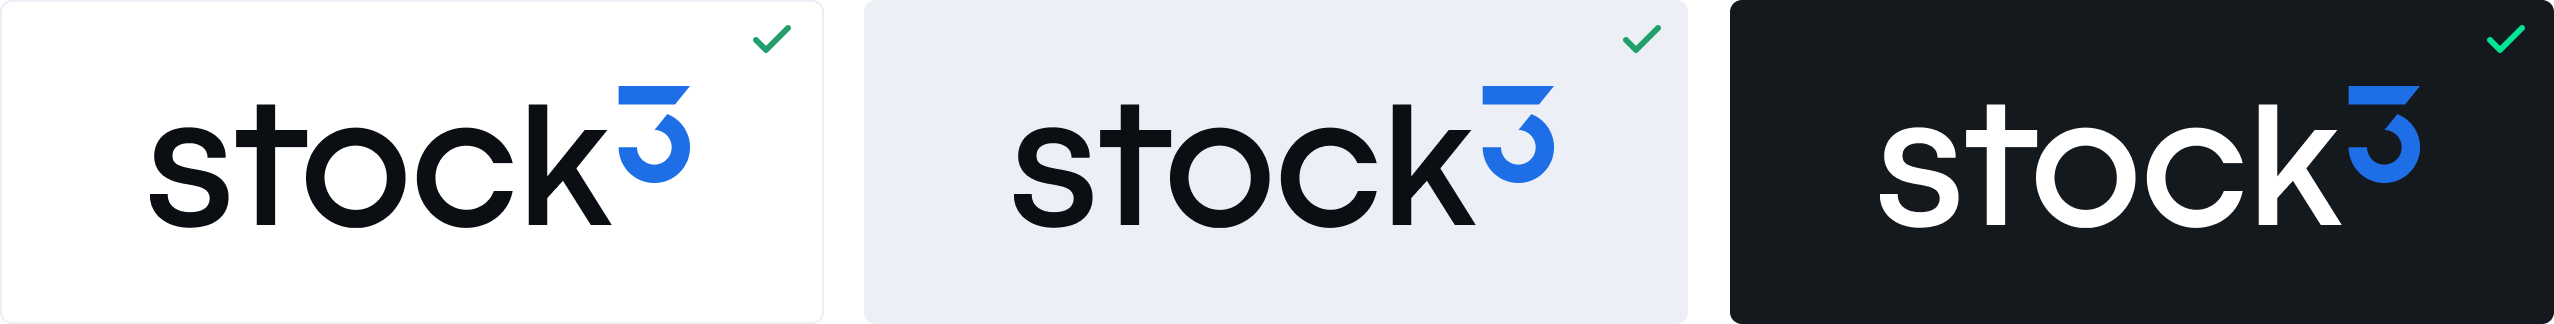 stock3 Logo auf Hintergrund